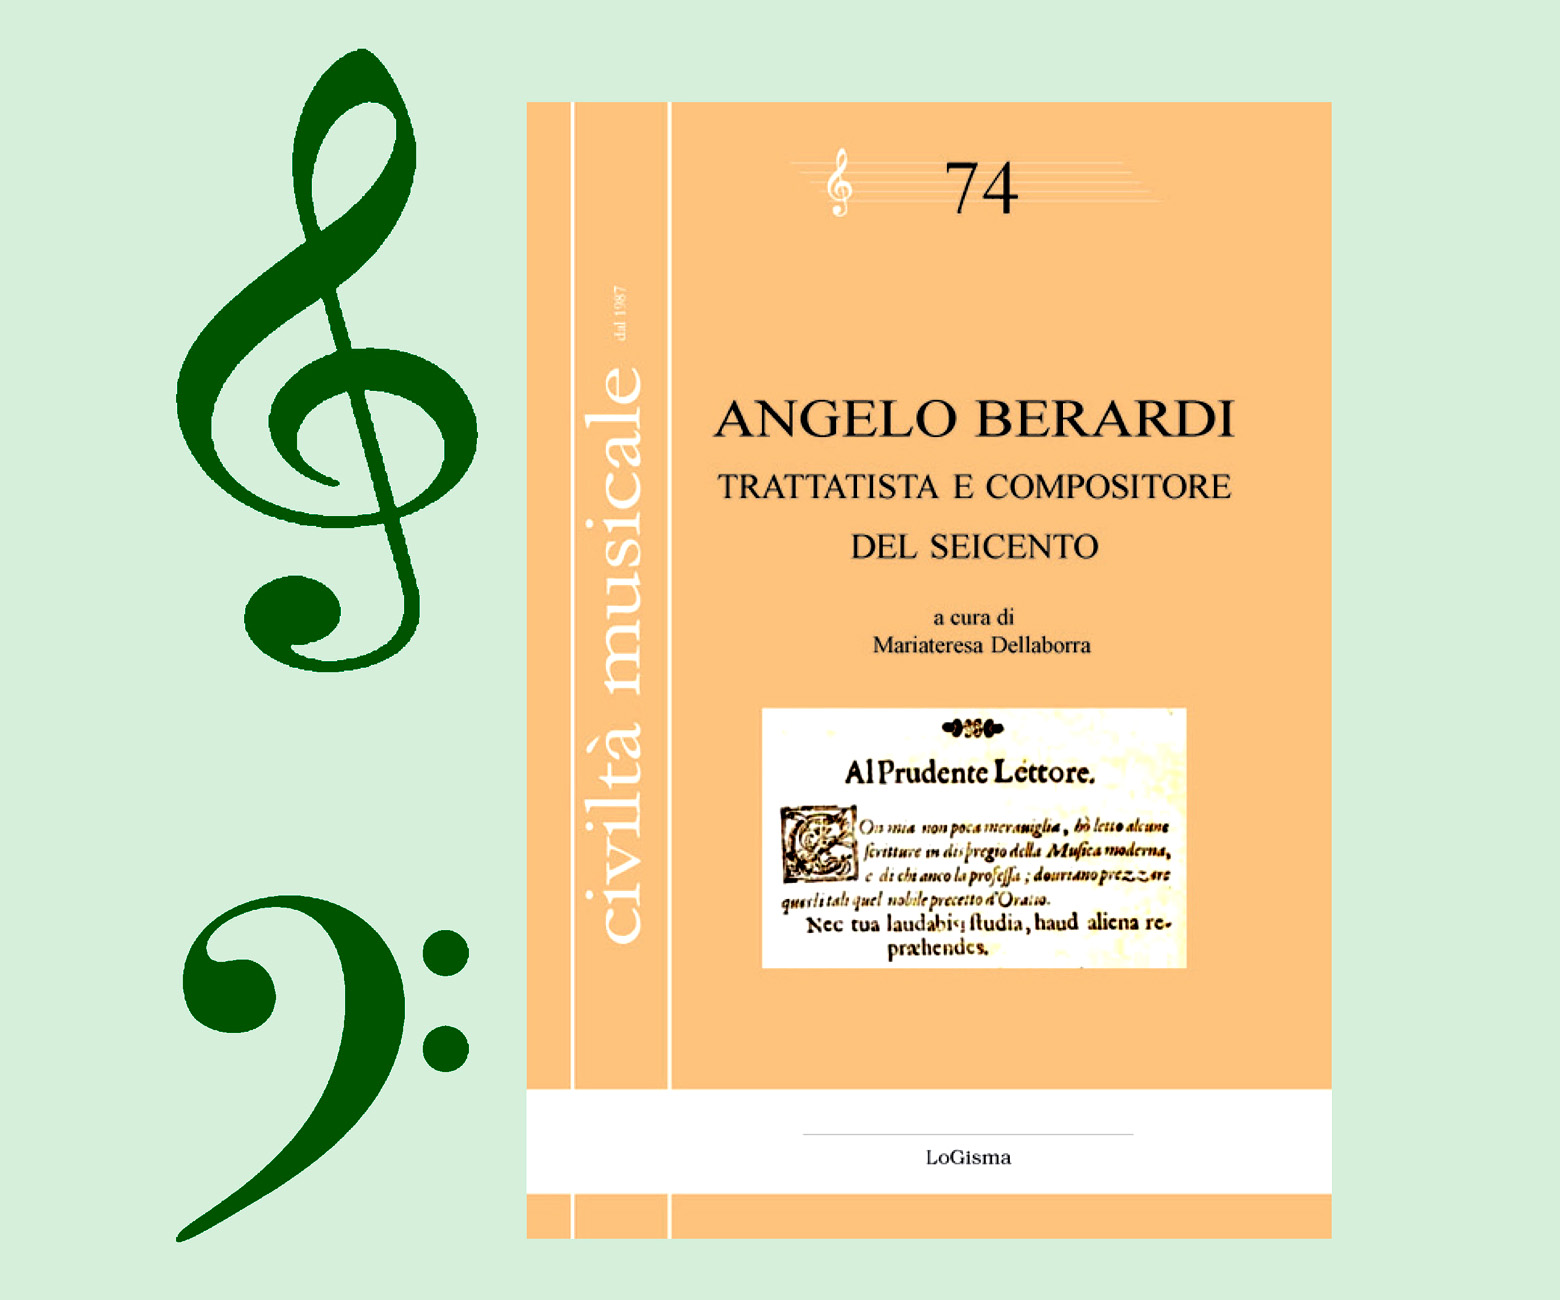 Presentazione del libro «Angelo Berardi - Trattatista e compositore del Seicento» a cura di Mariateresa Dellaborra» a cura di Mariateresa Dellaborra